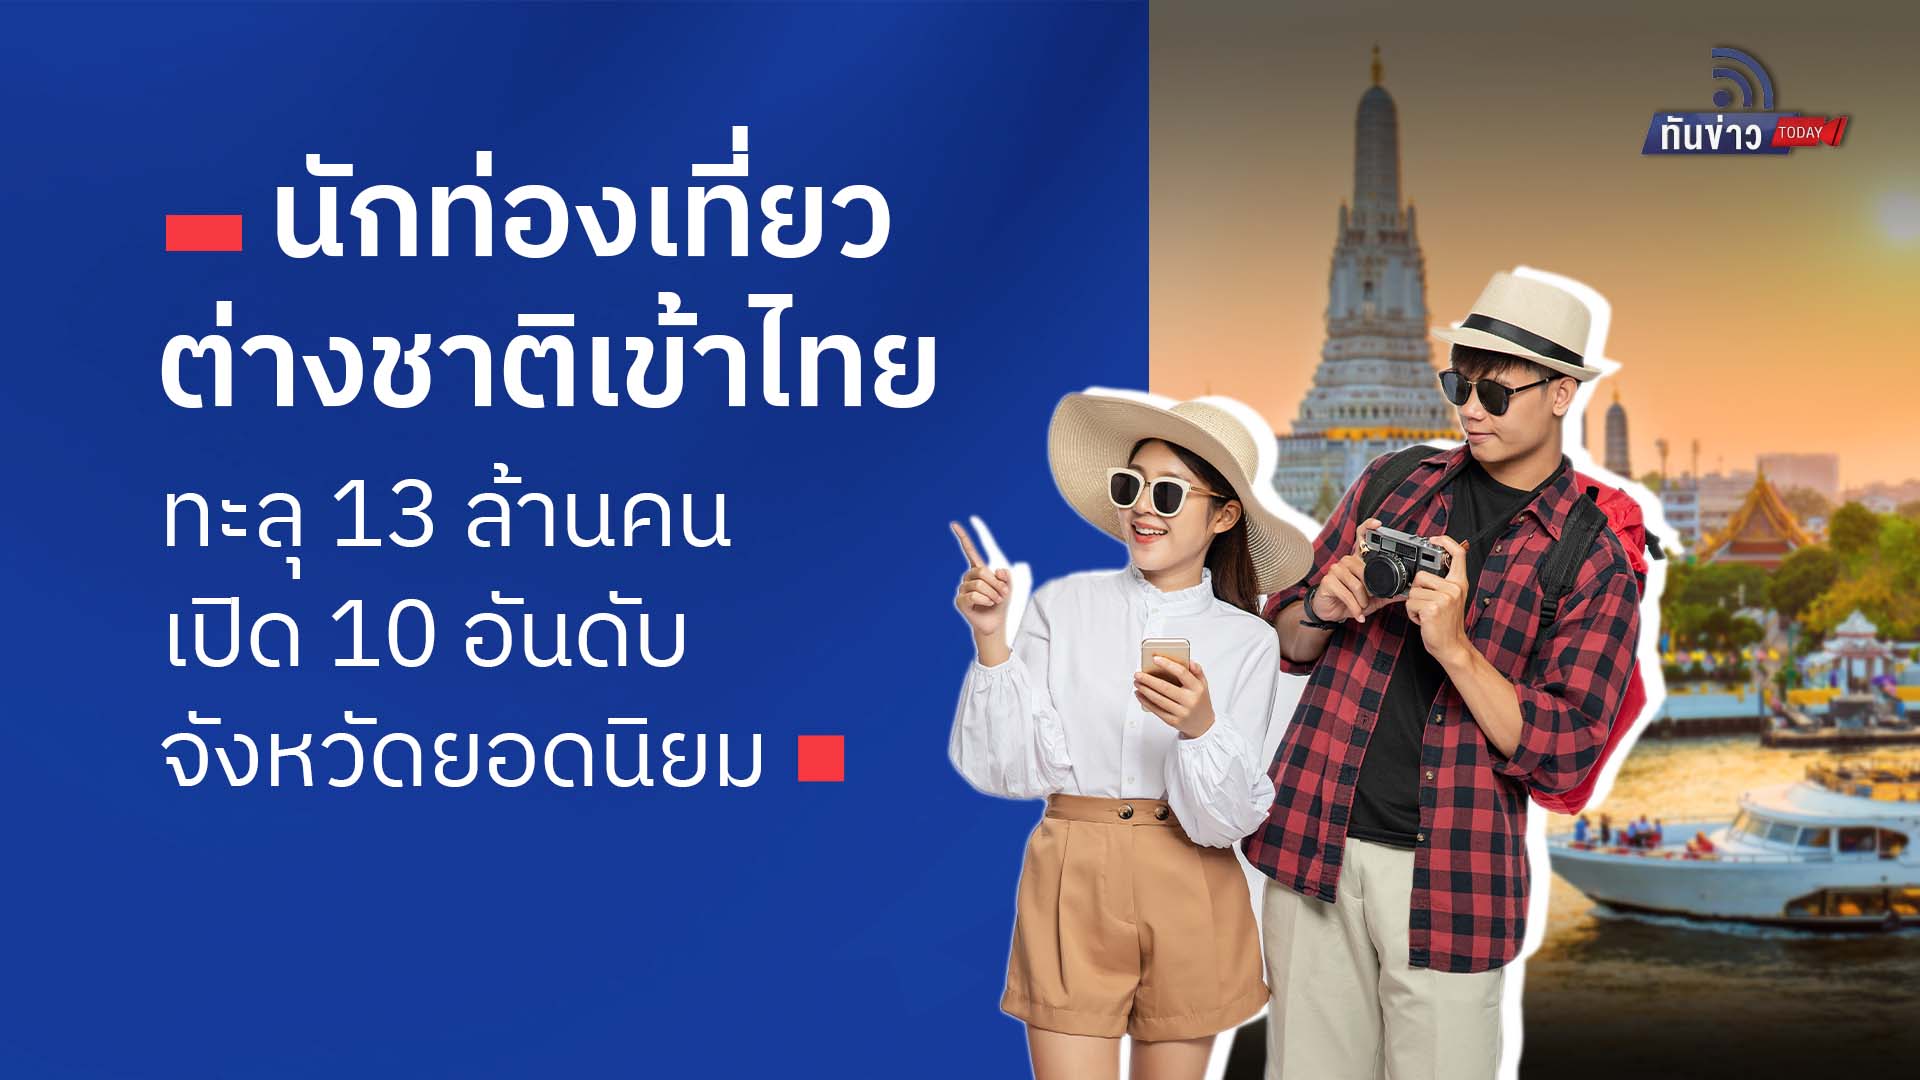 นักท่องเที่ยวชาติเข้าไทยทะลุ 13 ล้านคน  เปิด 10 อันดับจังหวัดยอดนิยม